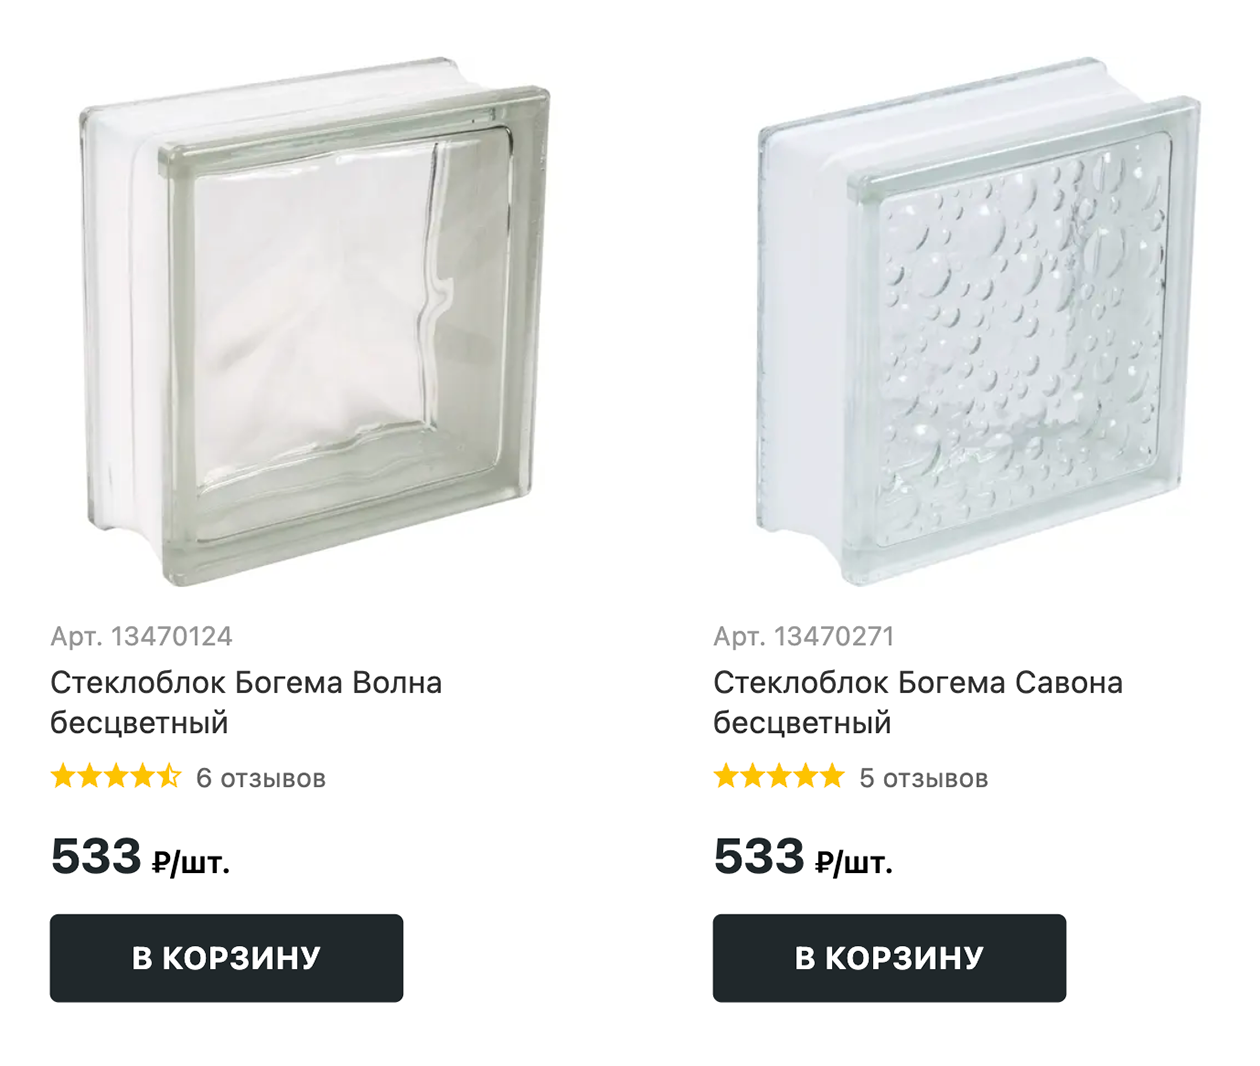 Стеклоблоки продаются в строительных магазинах, например в «Лемана Про», и на маркетплейсах. Источник: lemanapro.ru